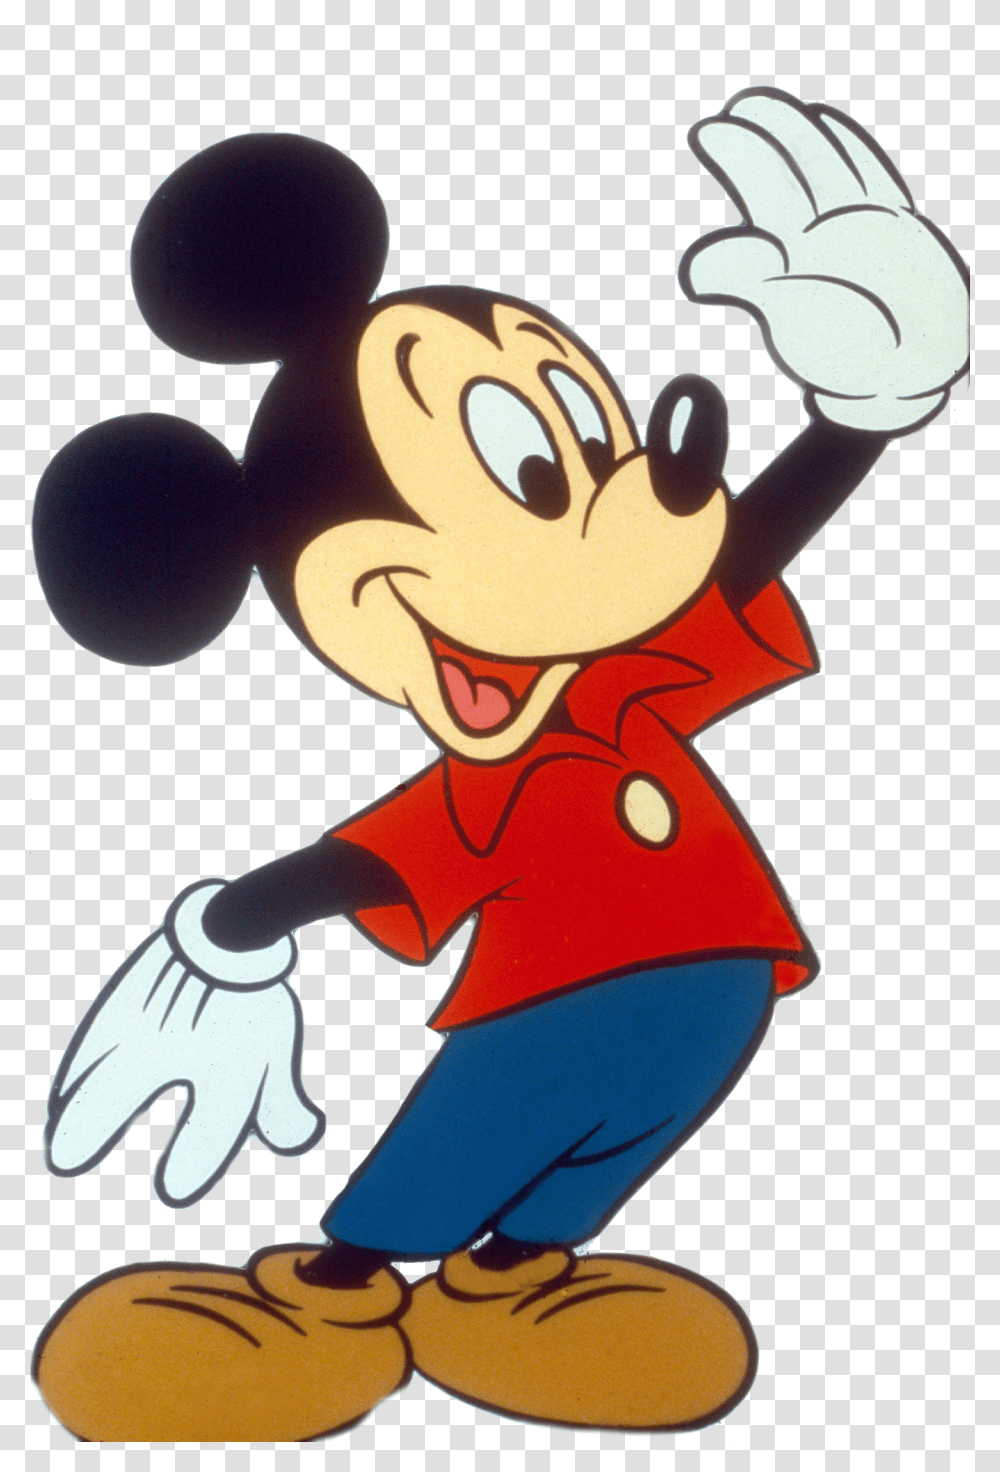 Cartoon Disney Mickey Mouse Transparent Png